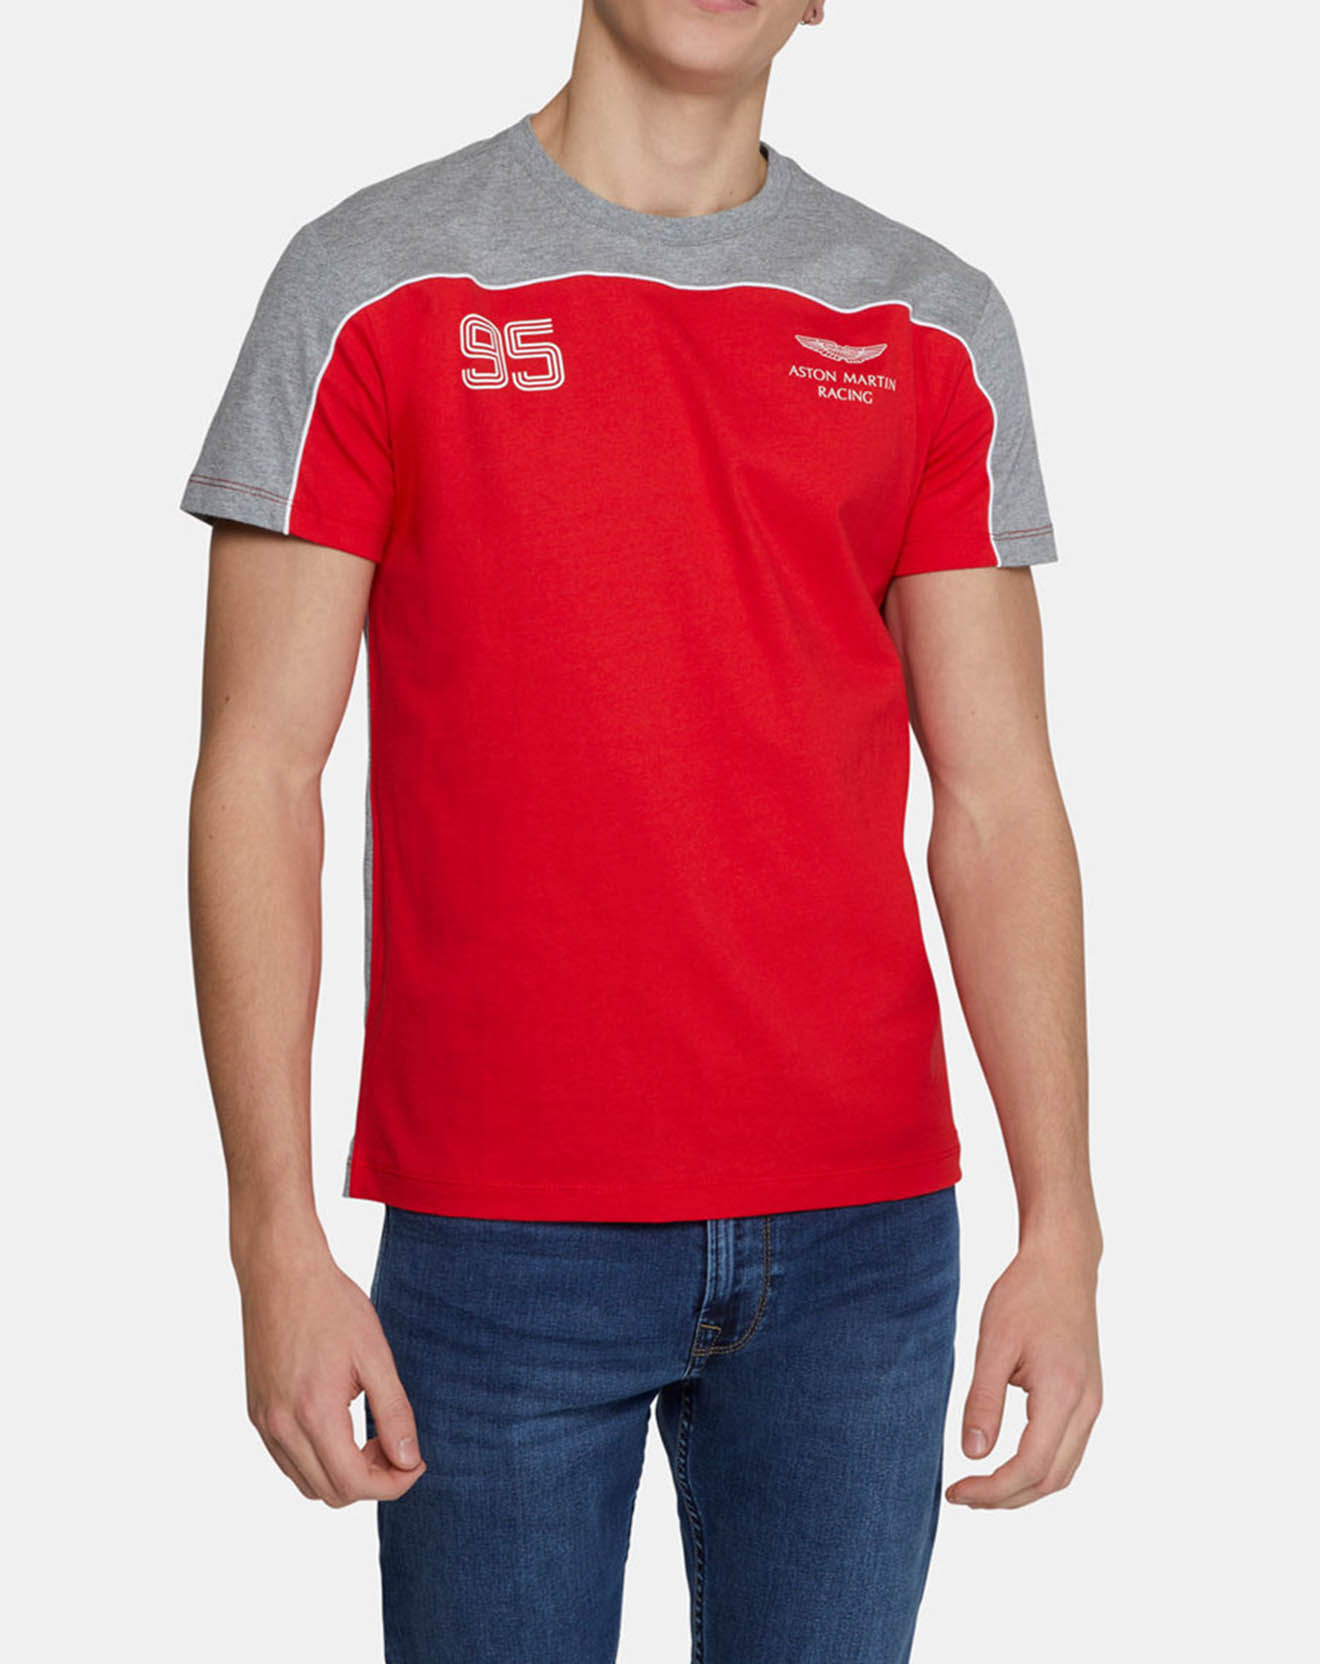 T-Shirt Poit 95 Aston Martin Racing gris/rouge